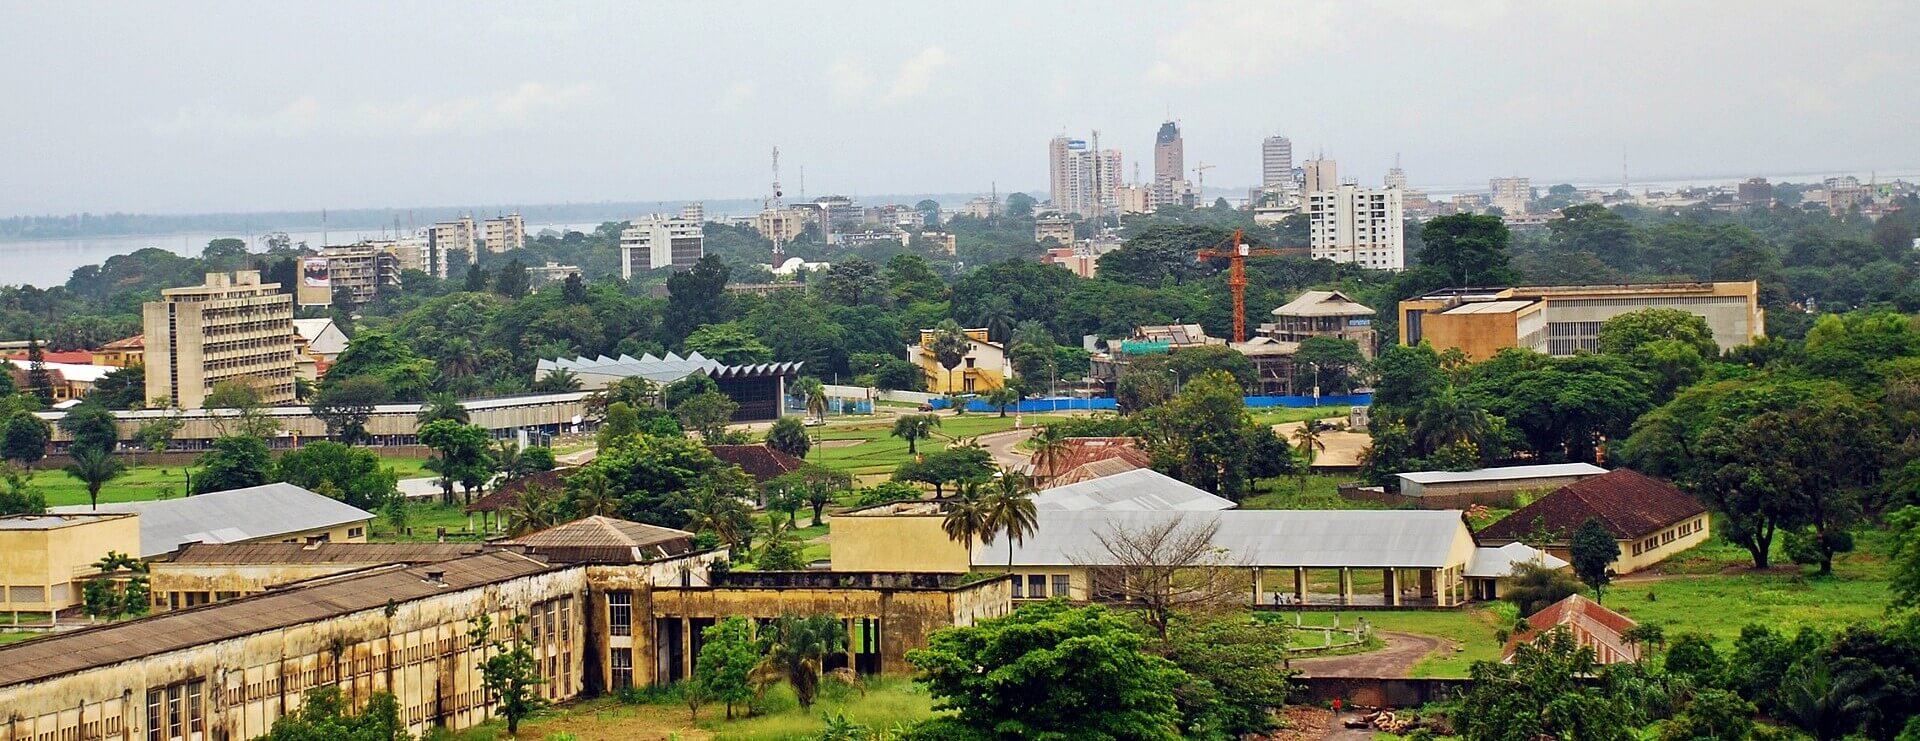 Kinshasa capitale de la république démocratique du congo